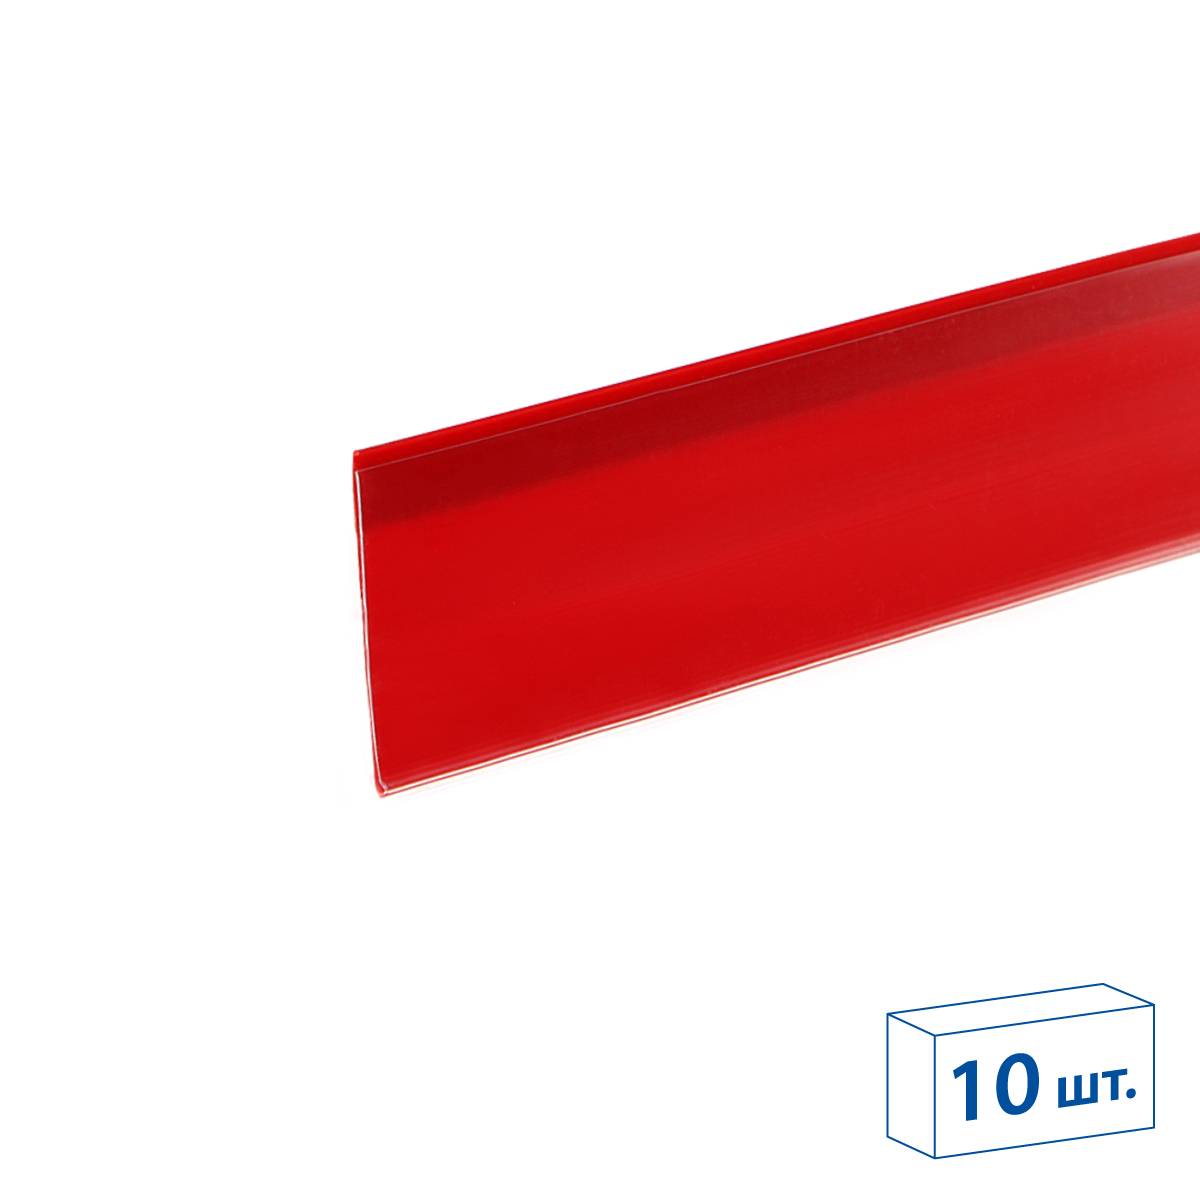 Ценникодержатель полочный самоклеящийся DBR39 SL длина 1250 мм., цвет красный (10 шт в упаковке)